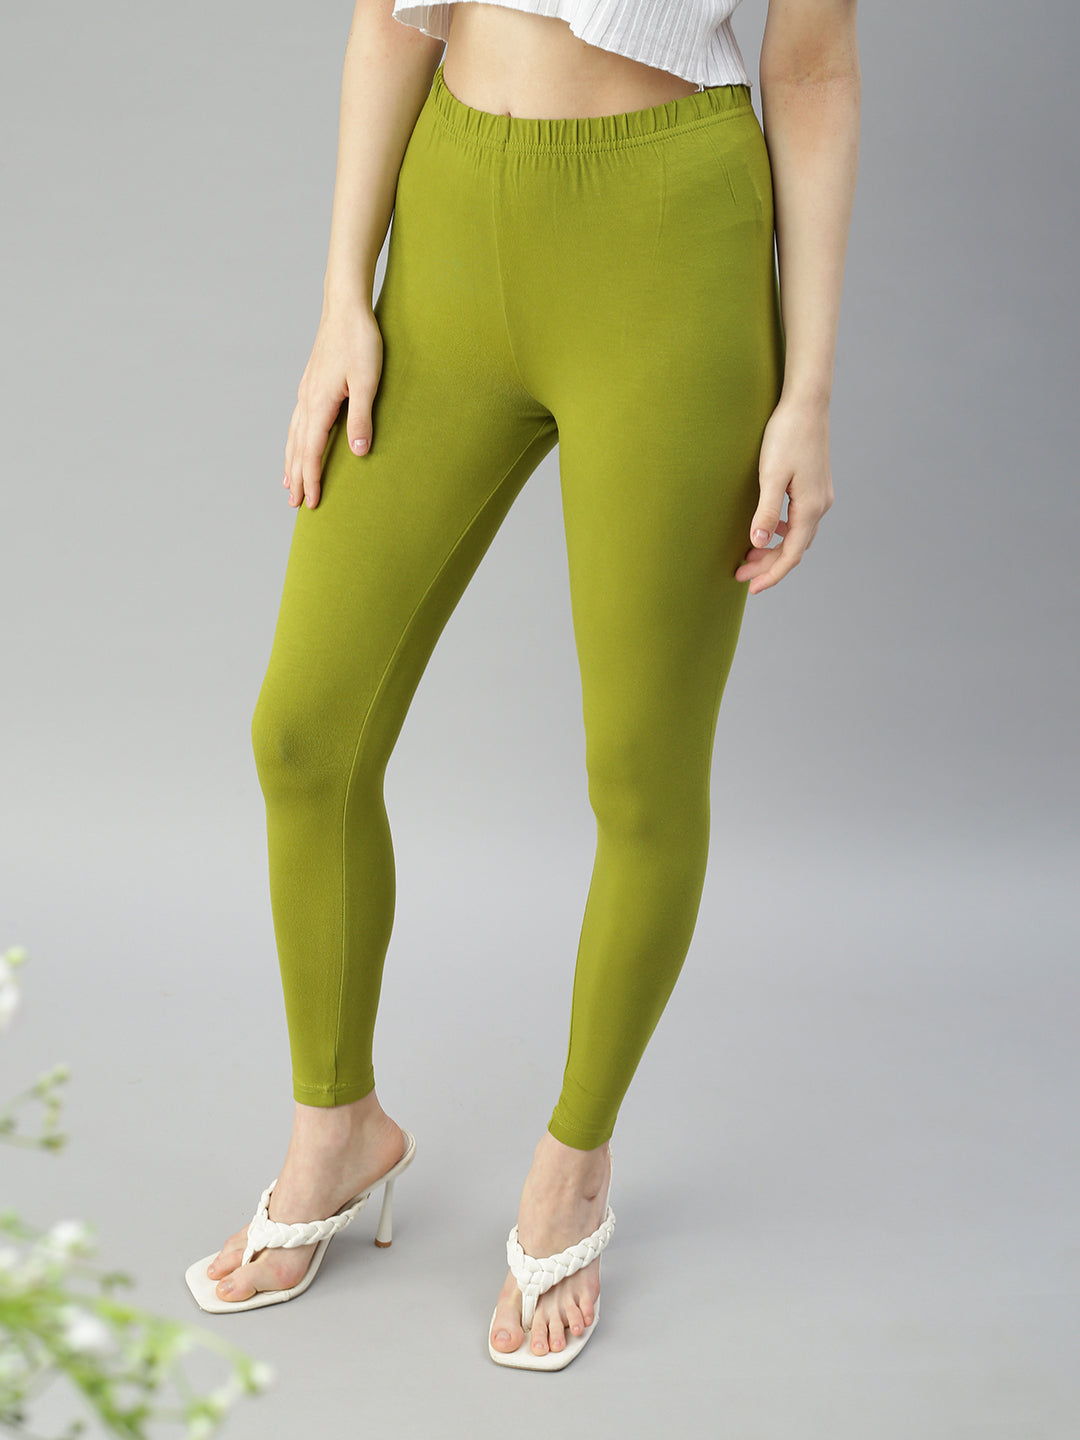 Ages 2-13 (20+ Colours) Girls Plain Legging Full Length Dance Brown Black  Green | eBay